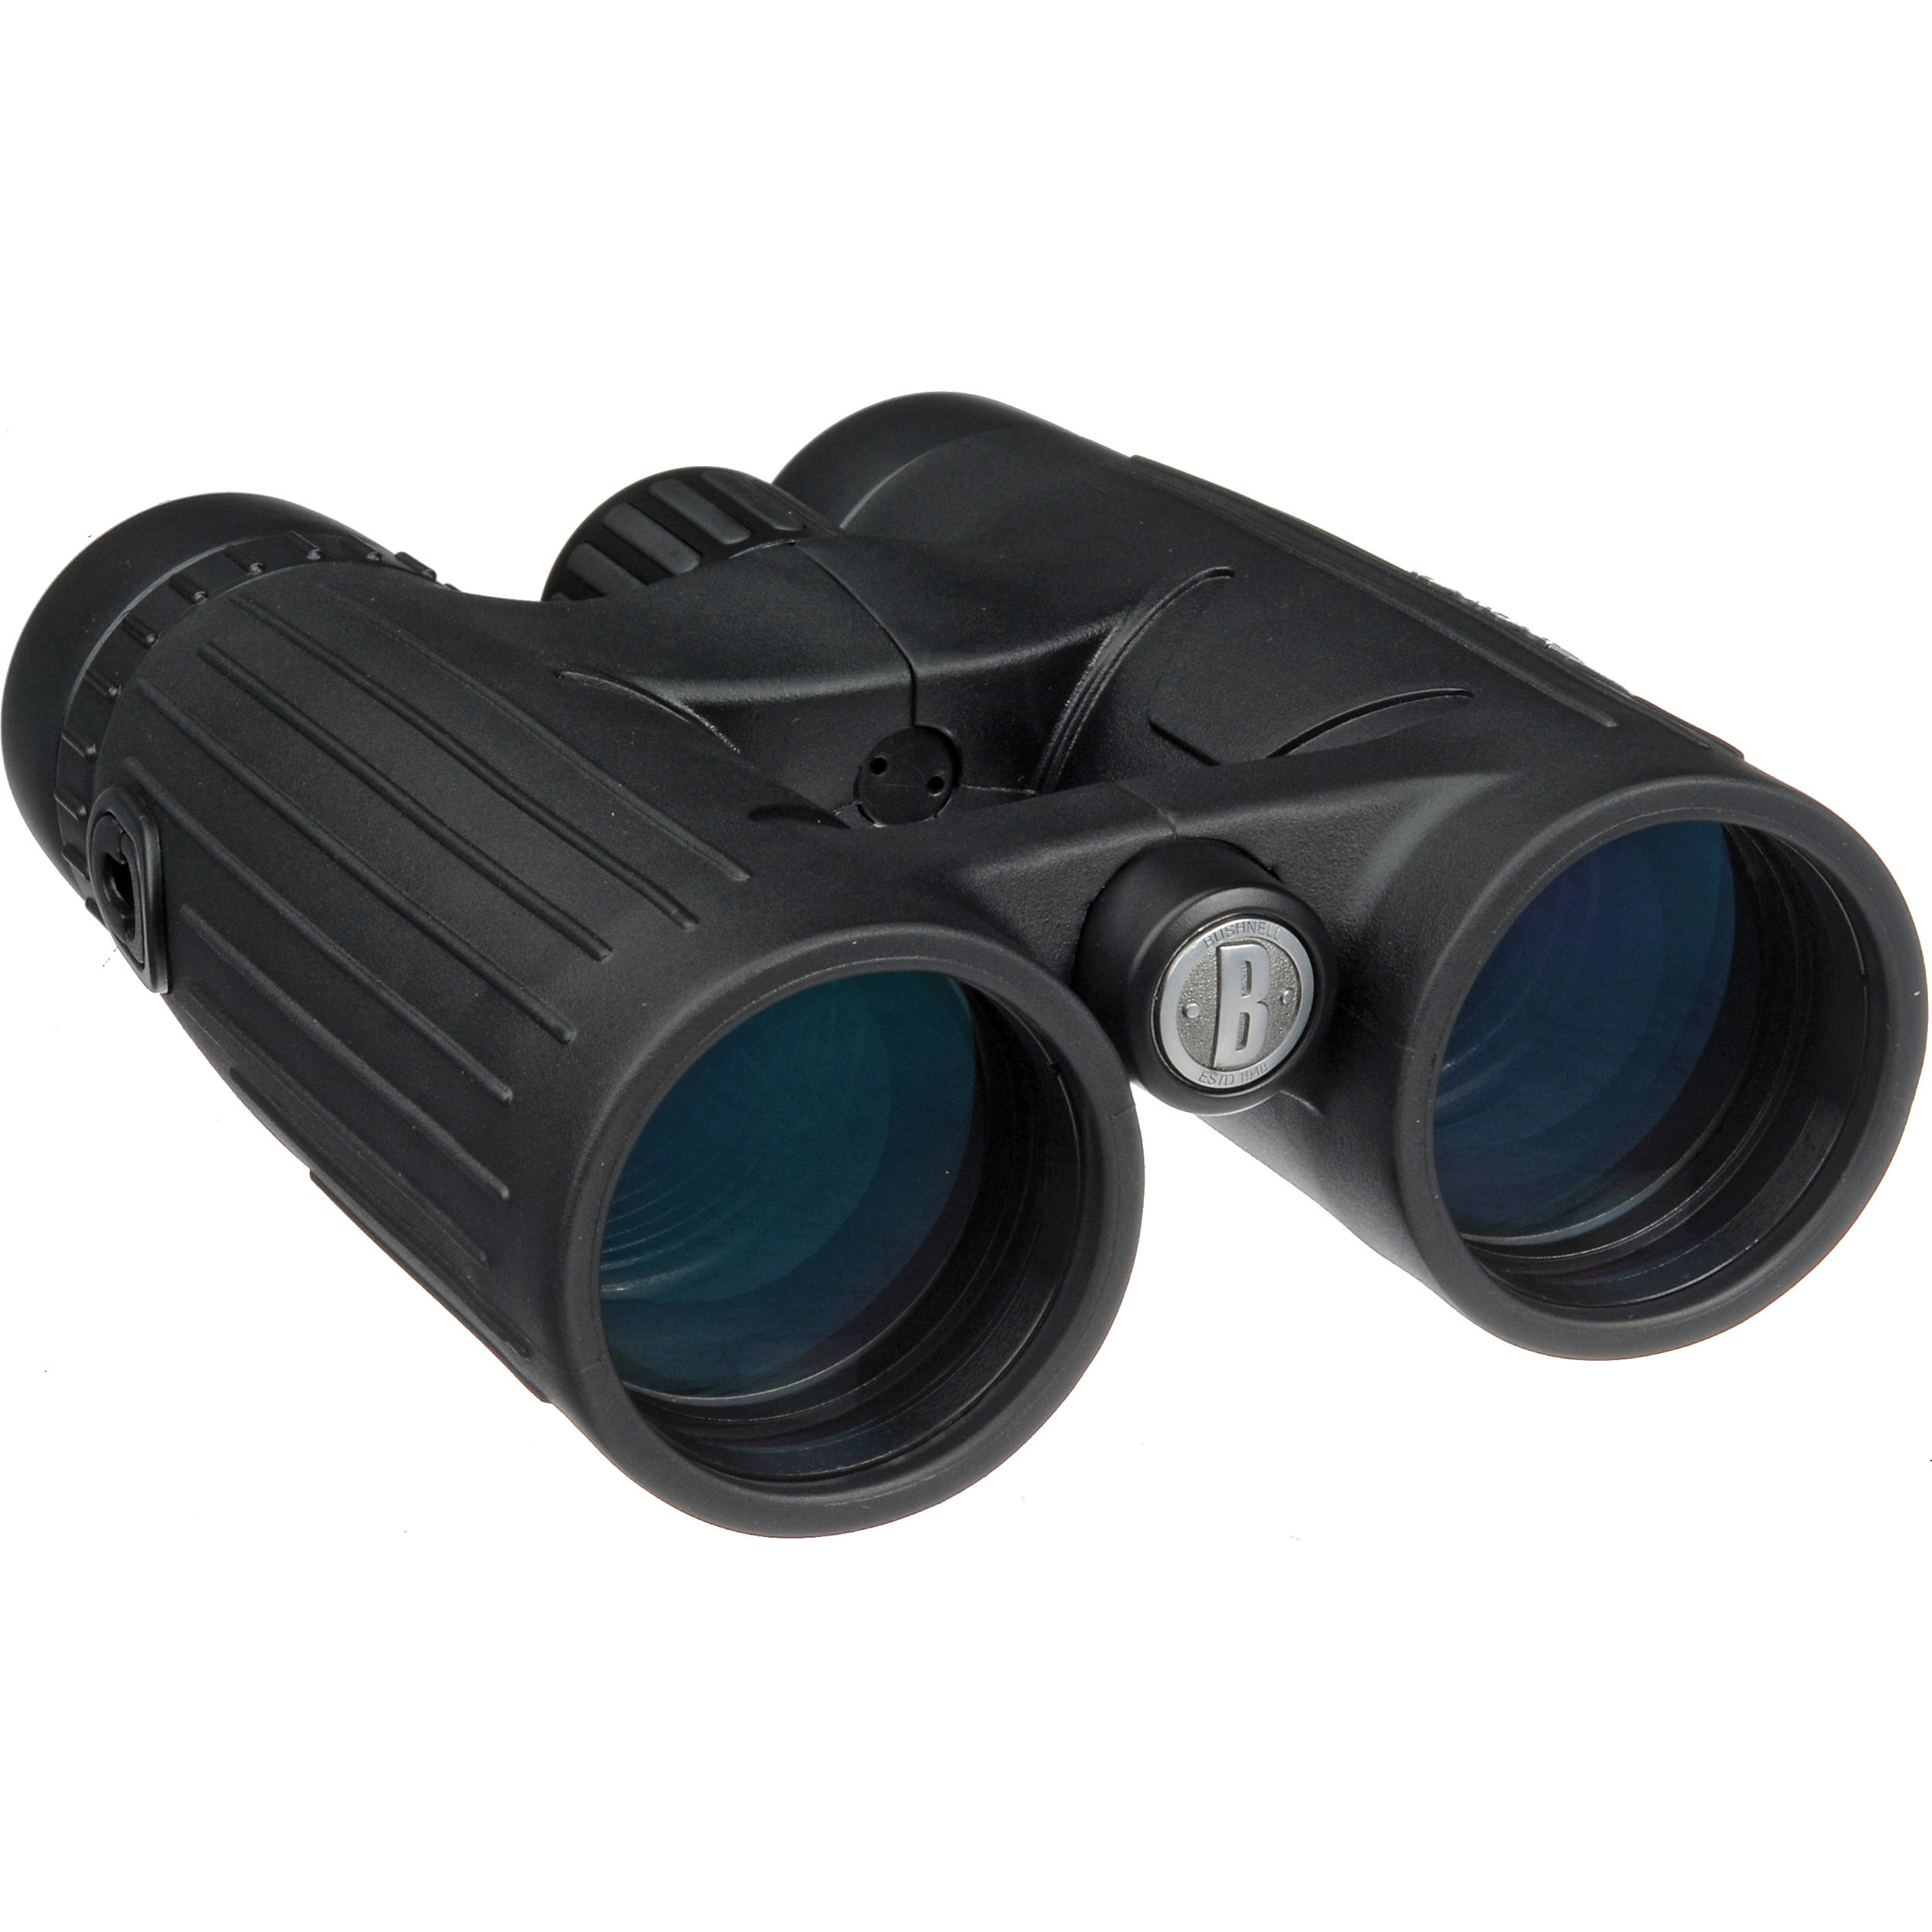 bushnell excursion ex 10x42 binoculars review